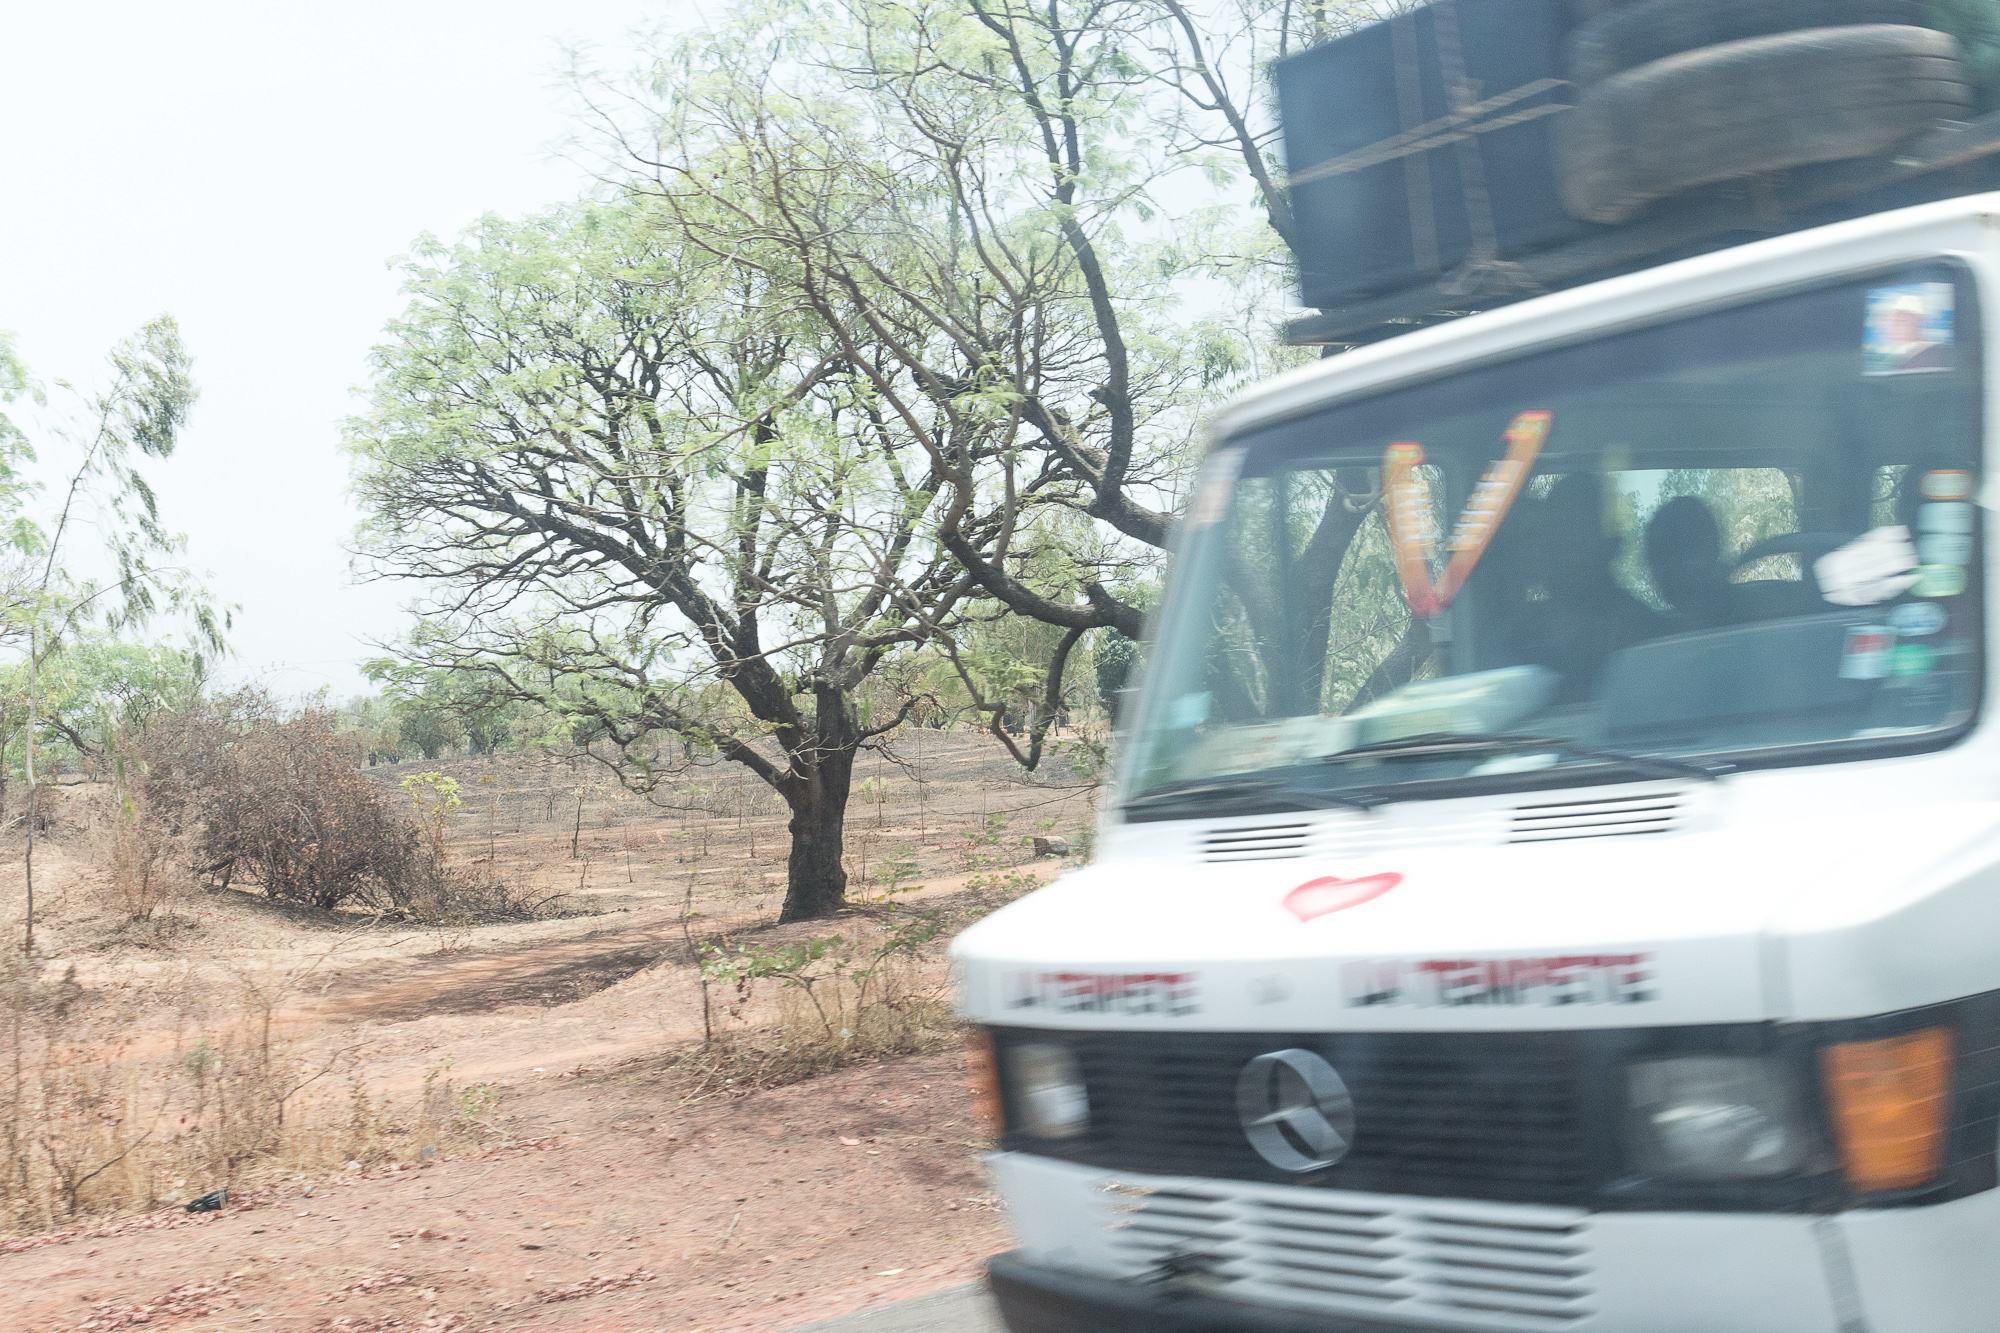 Taxi-brousse la Tempête, sur la route, Burkina Faso